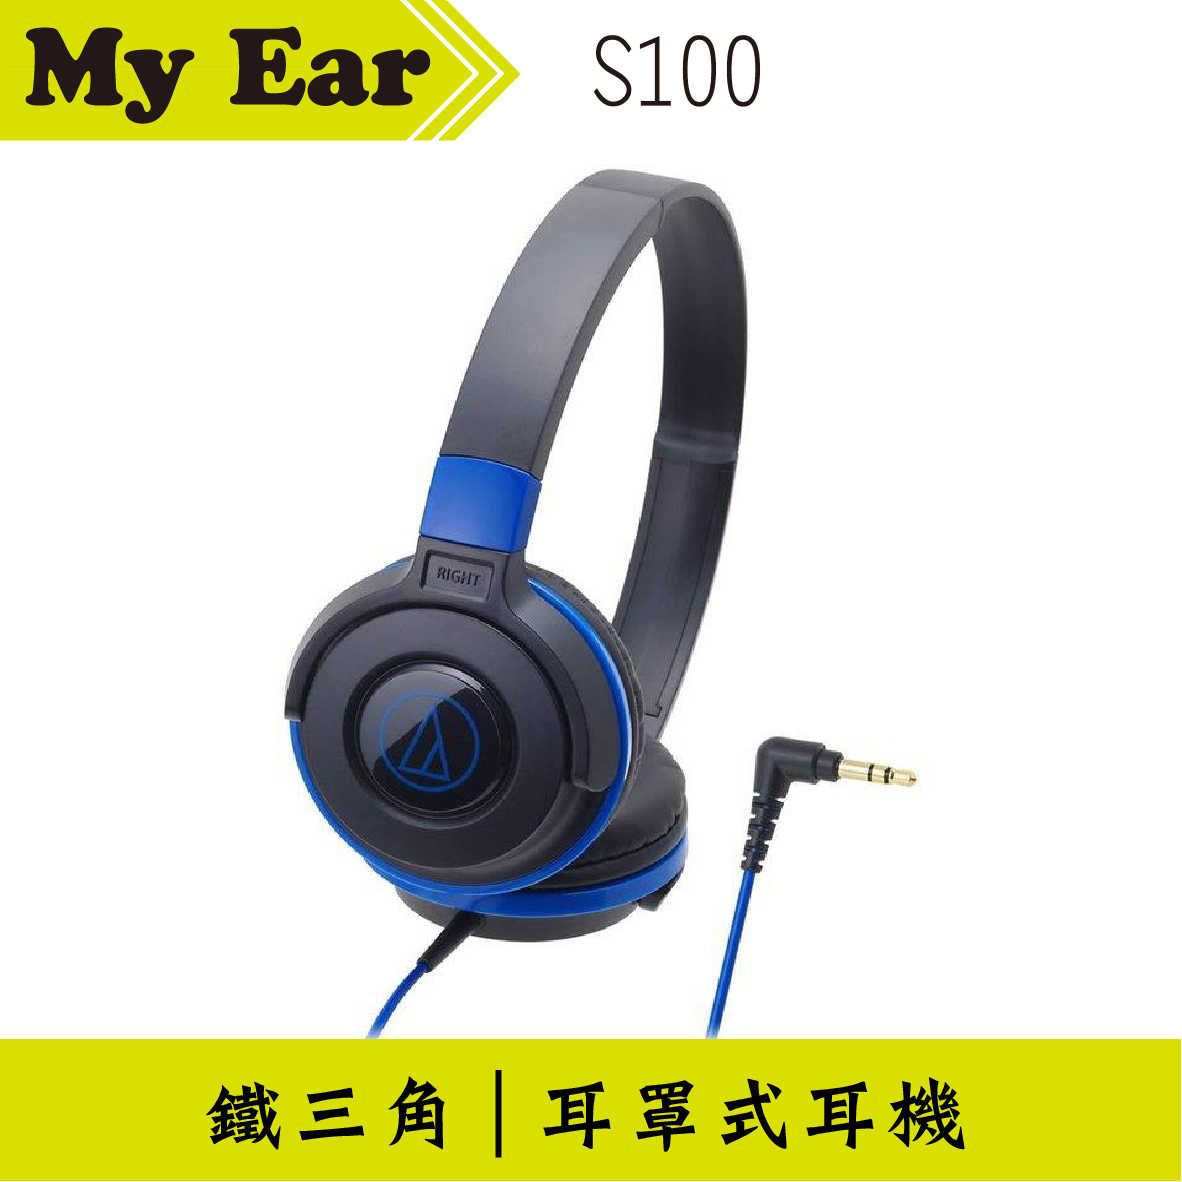 鐵三角 ATH-S100 耳罩式耳機 黑藍色 | My Ear 耳機專門店